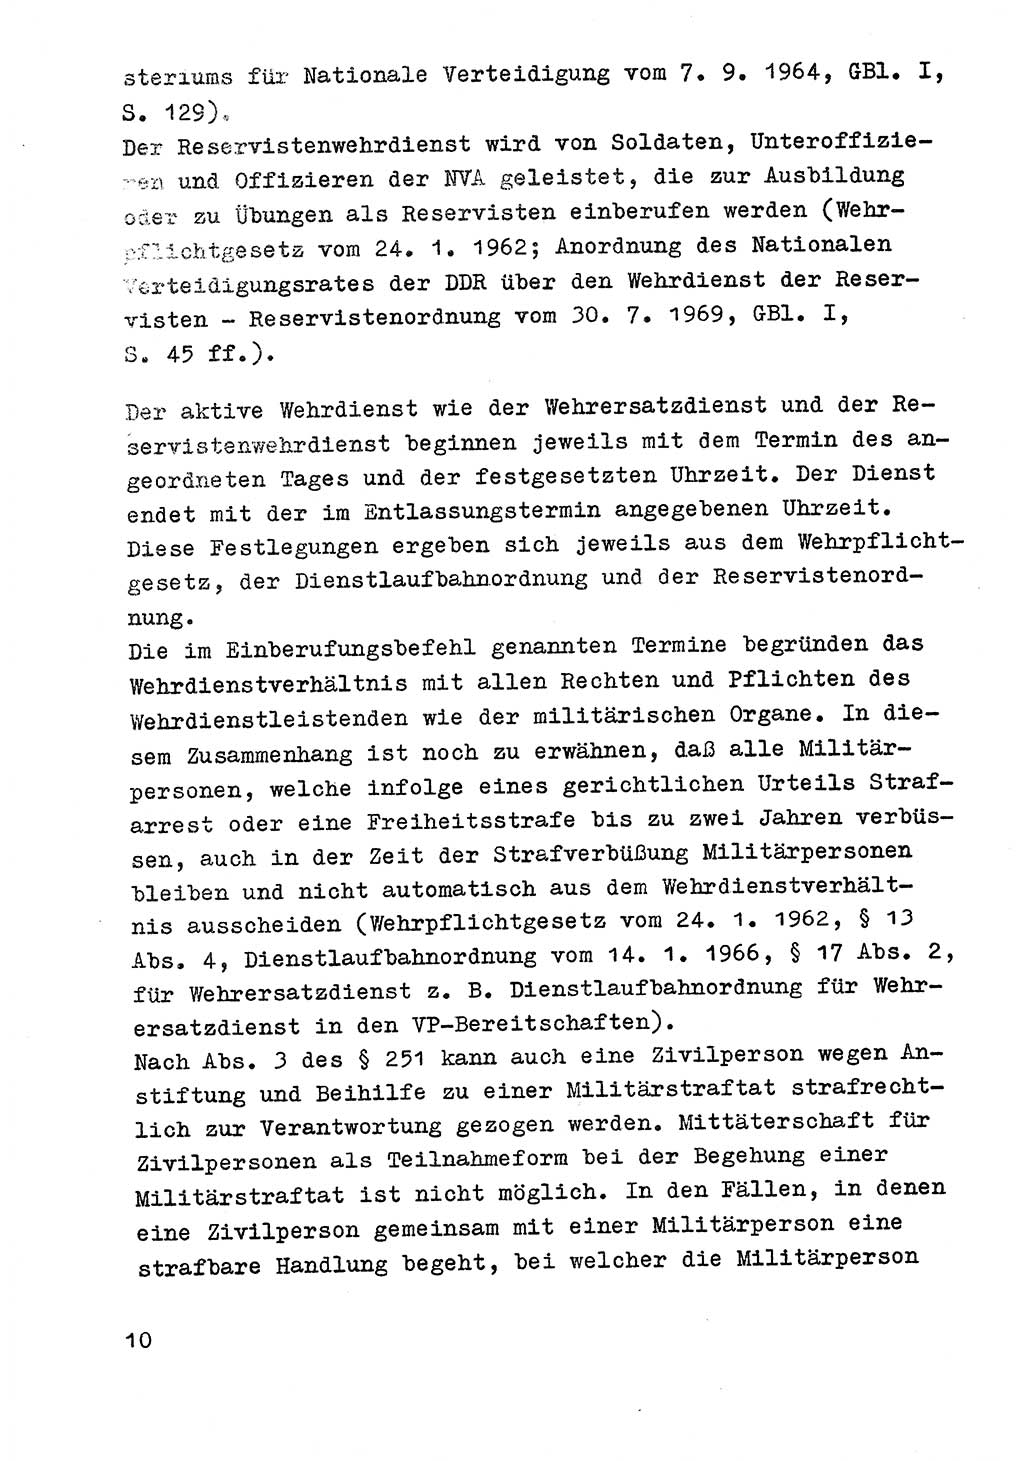 Strafrecht der DDR (Deutsche Demokratische Republik), Besonderer Teil, Lehrmaterial, Heft 9 1969, Seite 10 (Strafr. DDR BT Lehrmat. H. 9 1969, S. 10)